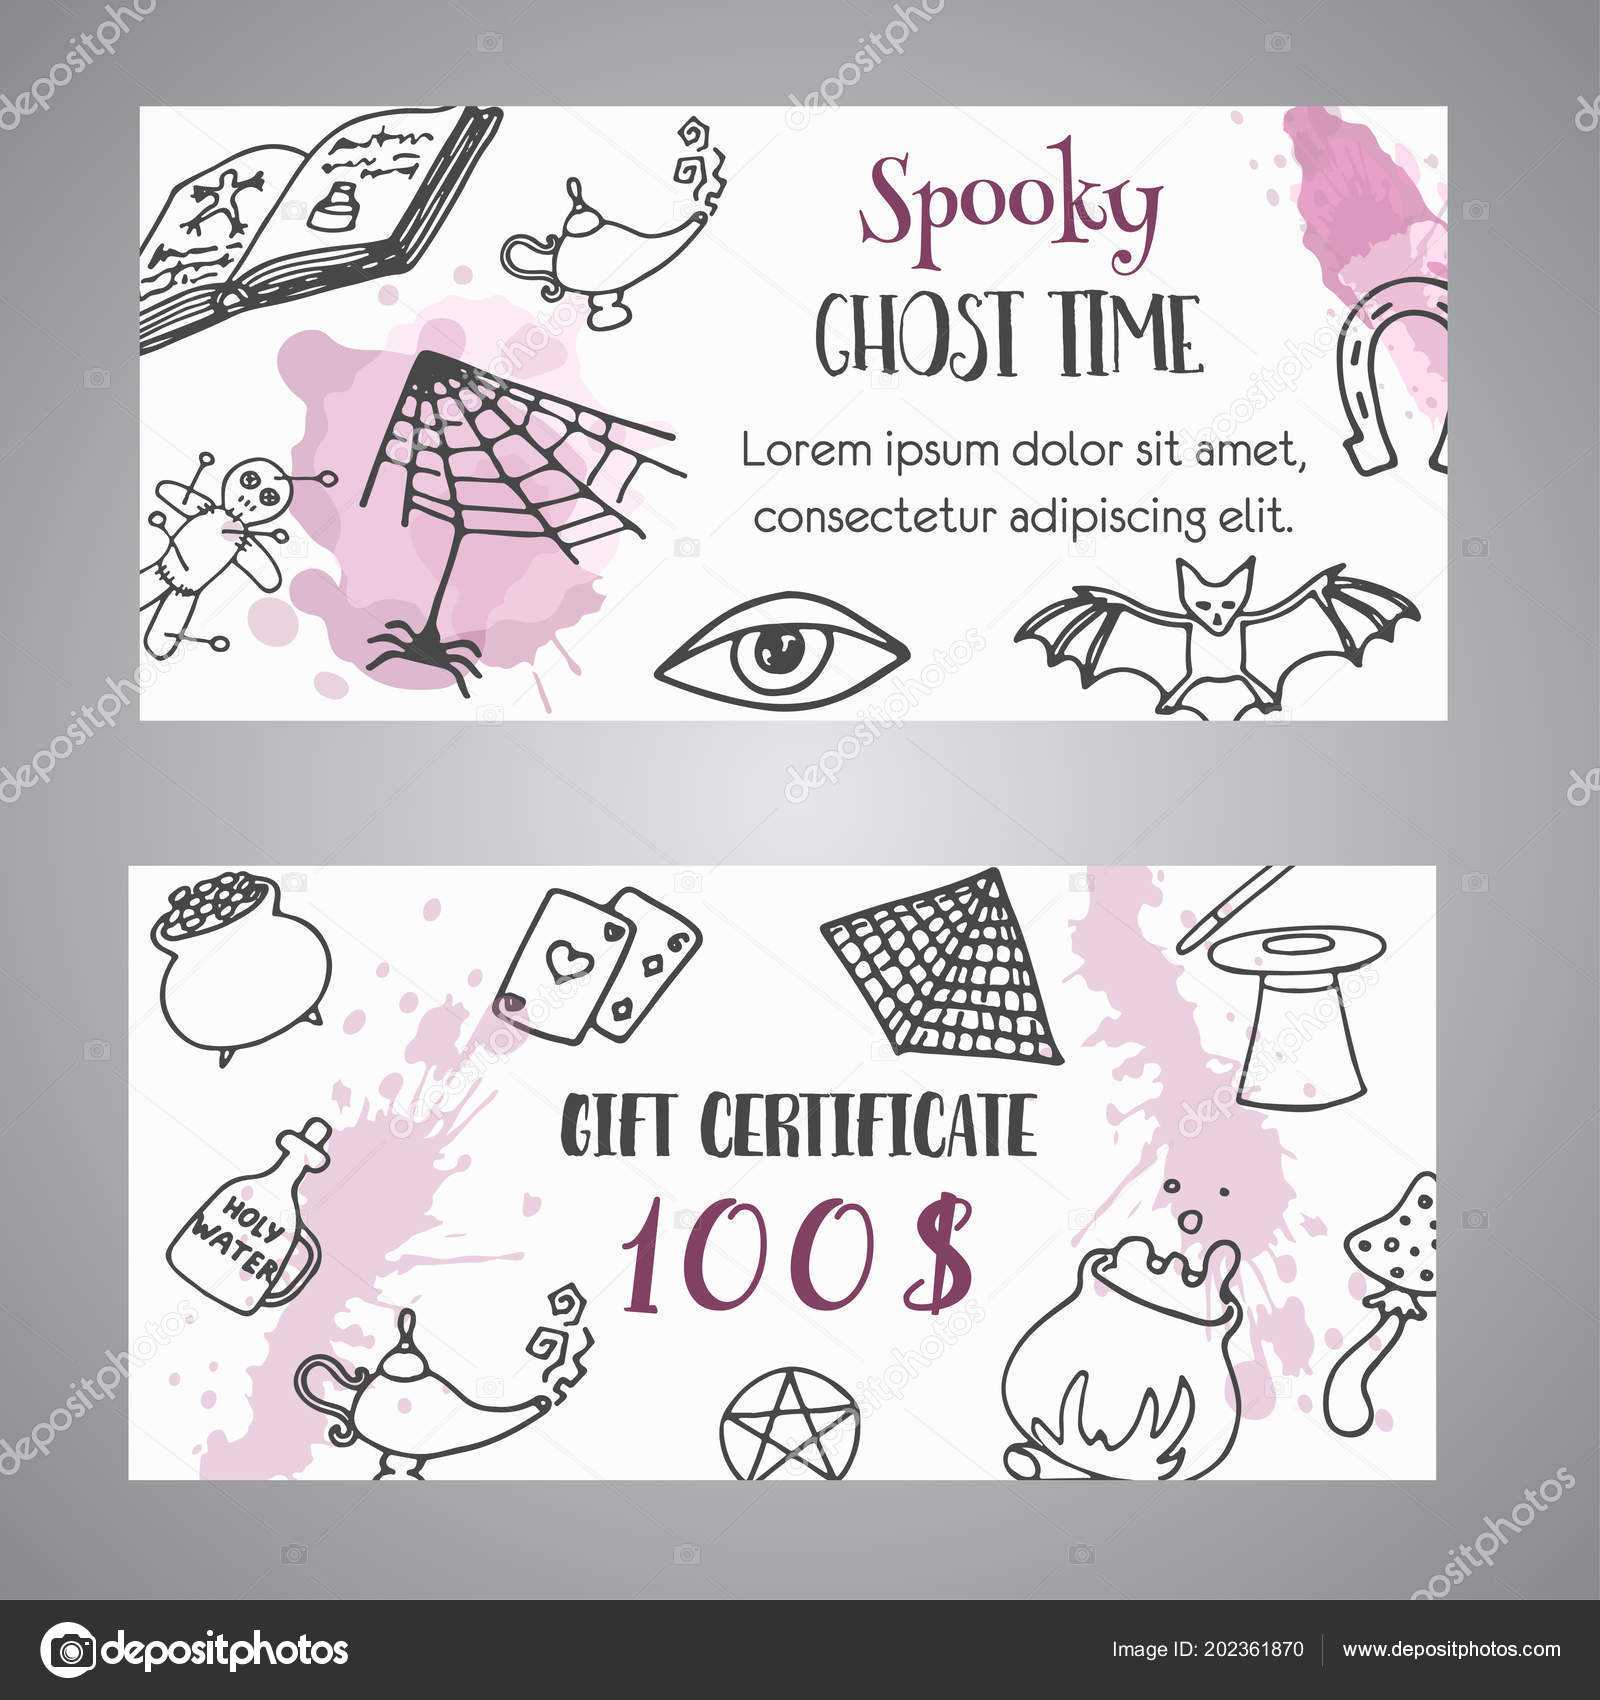 Hand Drawn Halloween Banner Free Voucher Template. Ghost Regarding Halloween Certificate Template